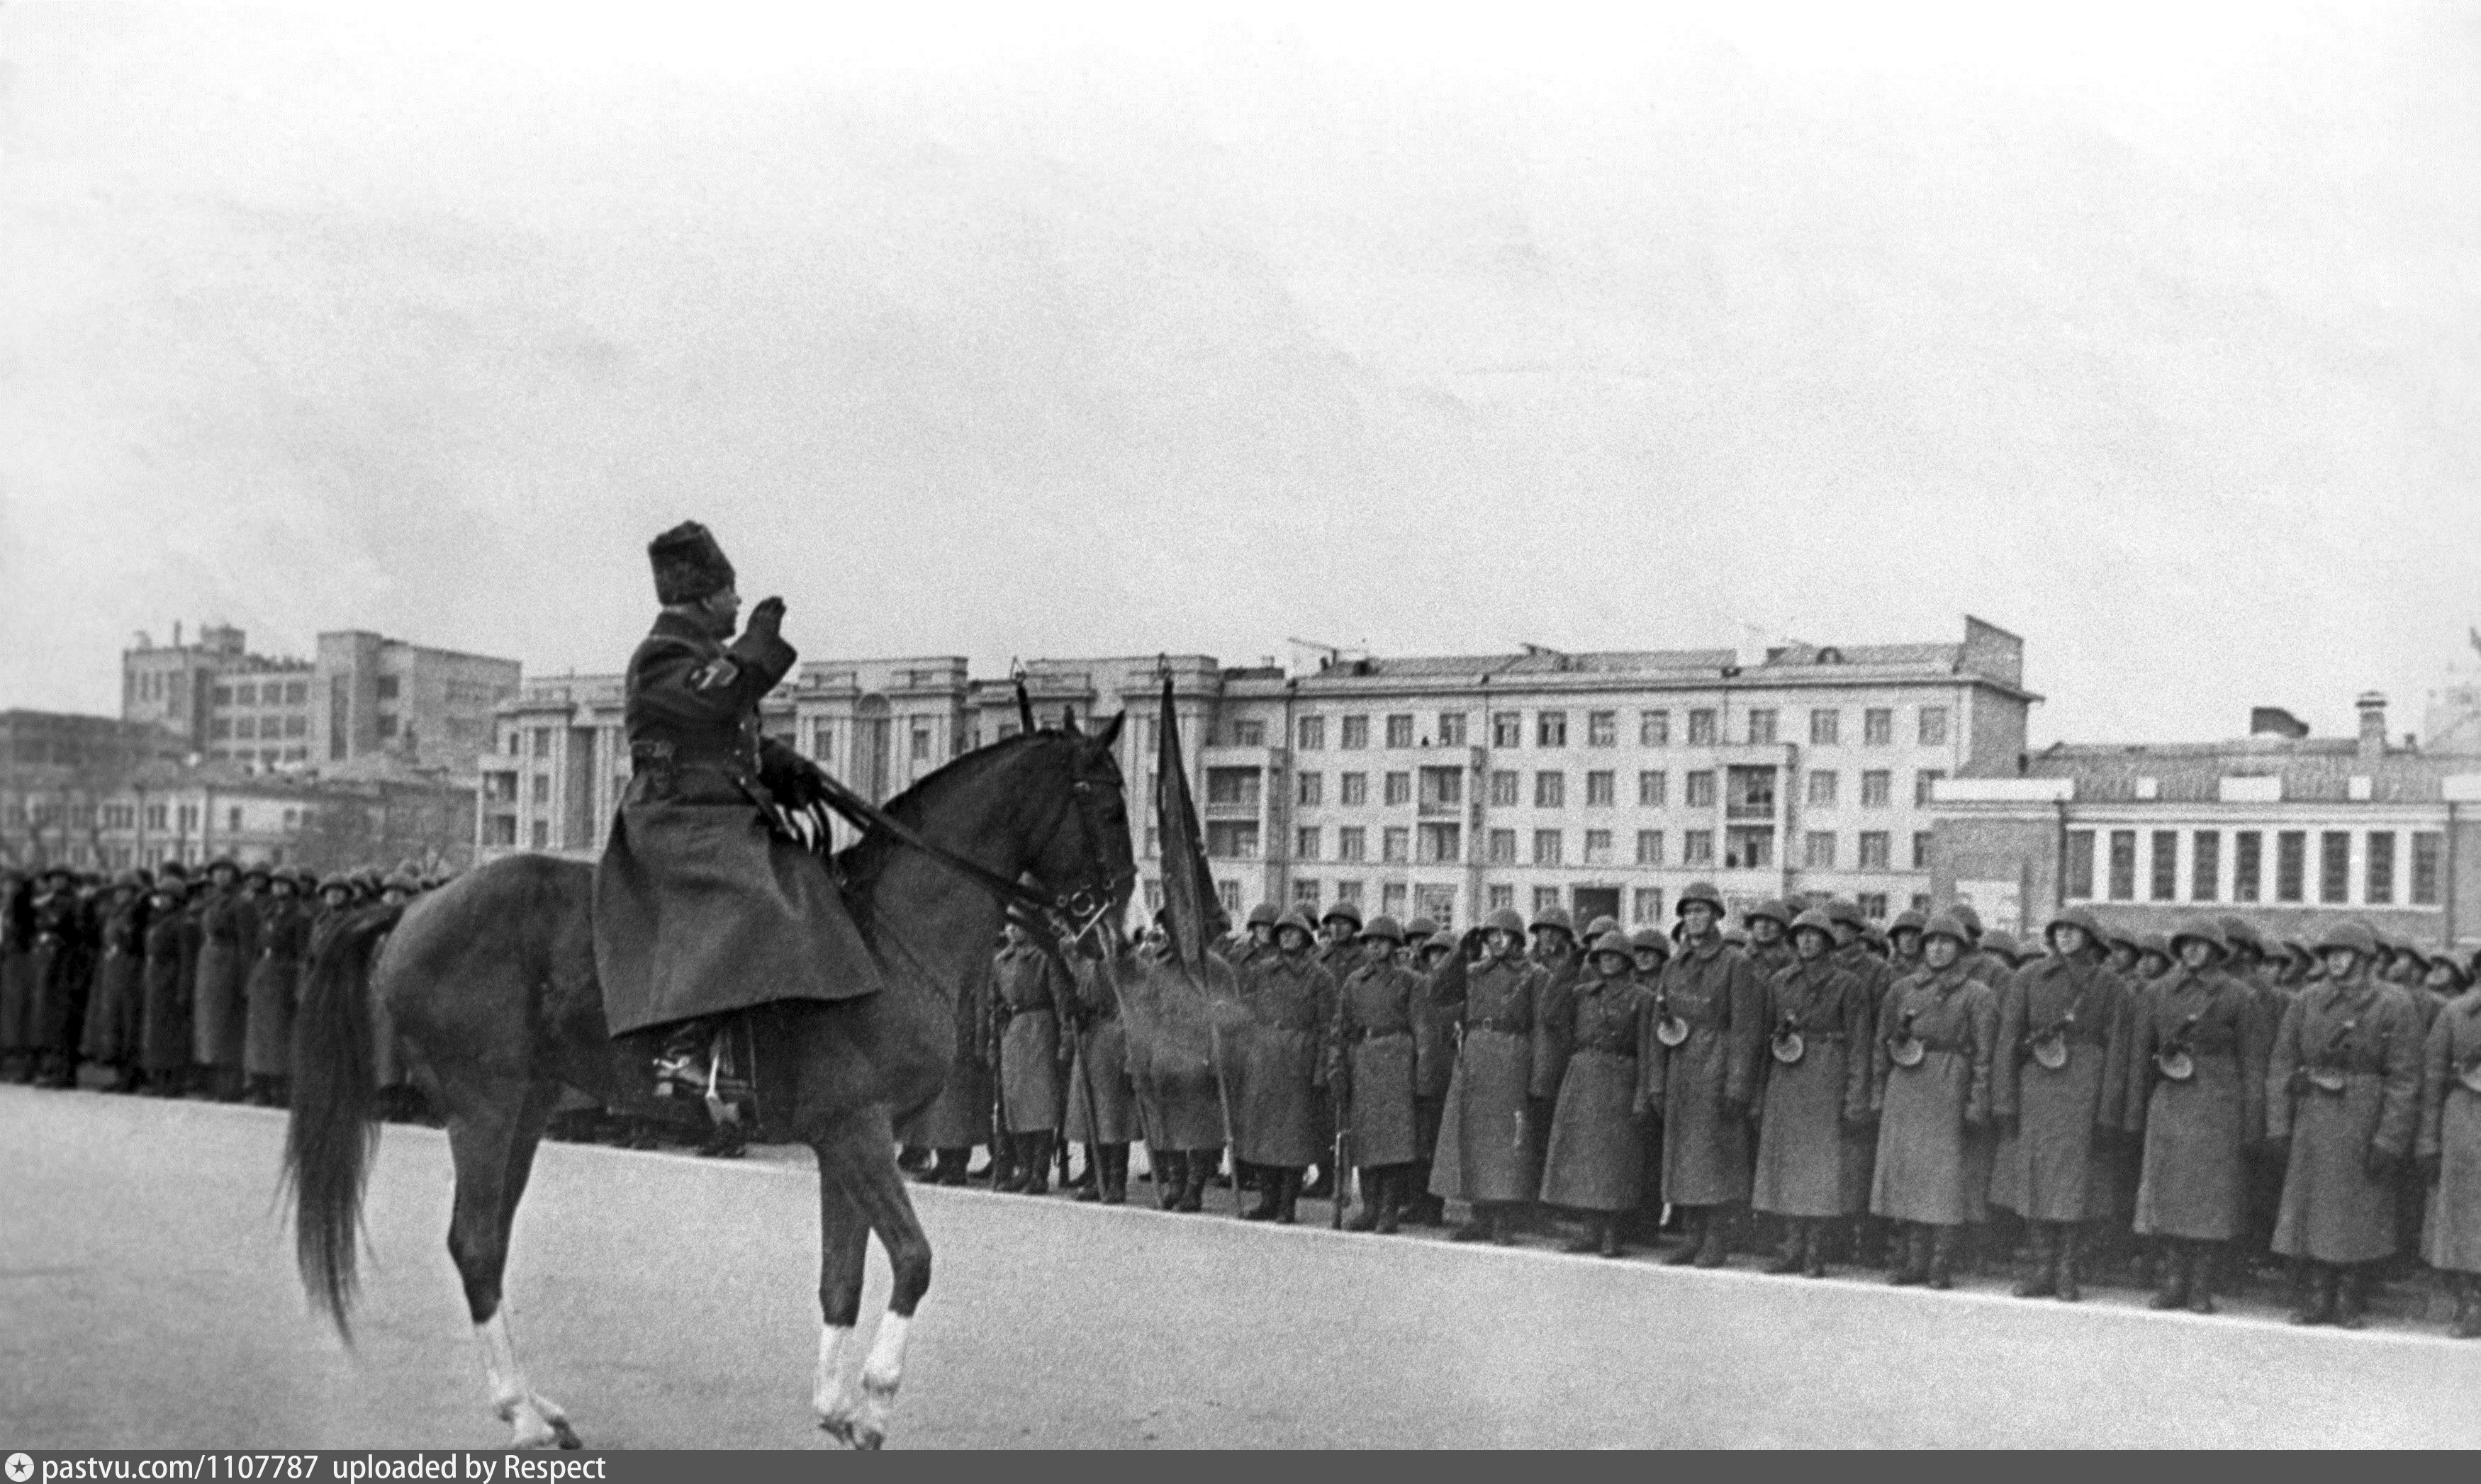 Парад 1941 в каких городах прошел